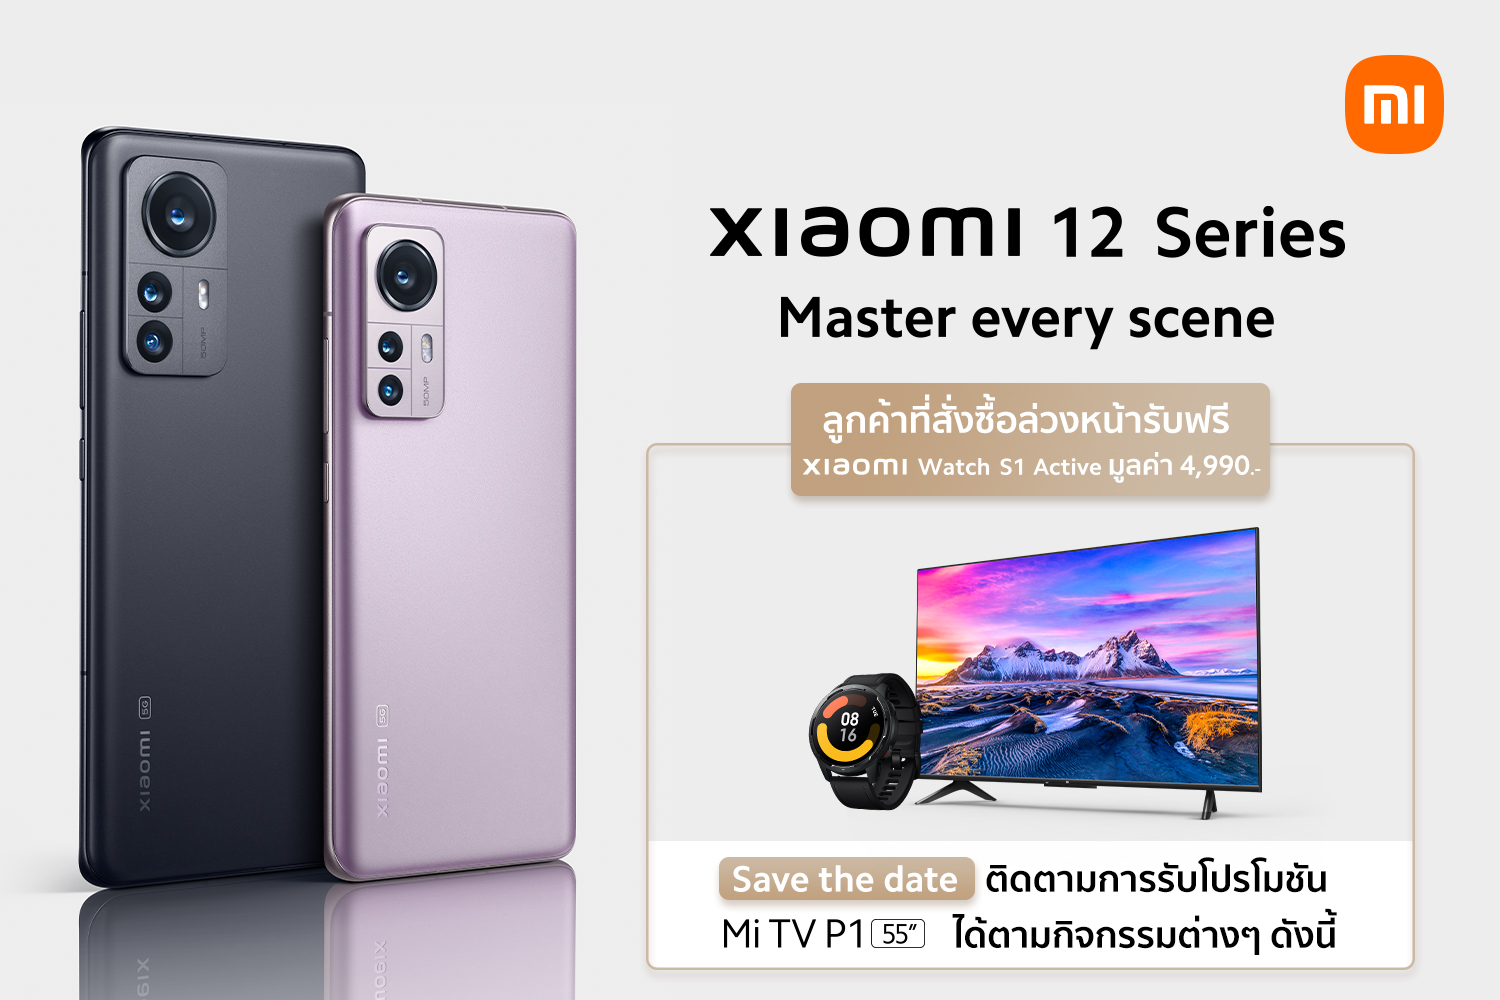 เสียวหมี่เปิดตัว Xiaomi 12 Series พร้อมชนเรื่องกล้อง ล่าสุด!! เพิ่มความเร็วเน็ต 5G + WiFi  พร้อมผลิตภัณฑ์ AIoT รุ่นใหม่มากมาย